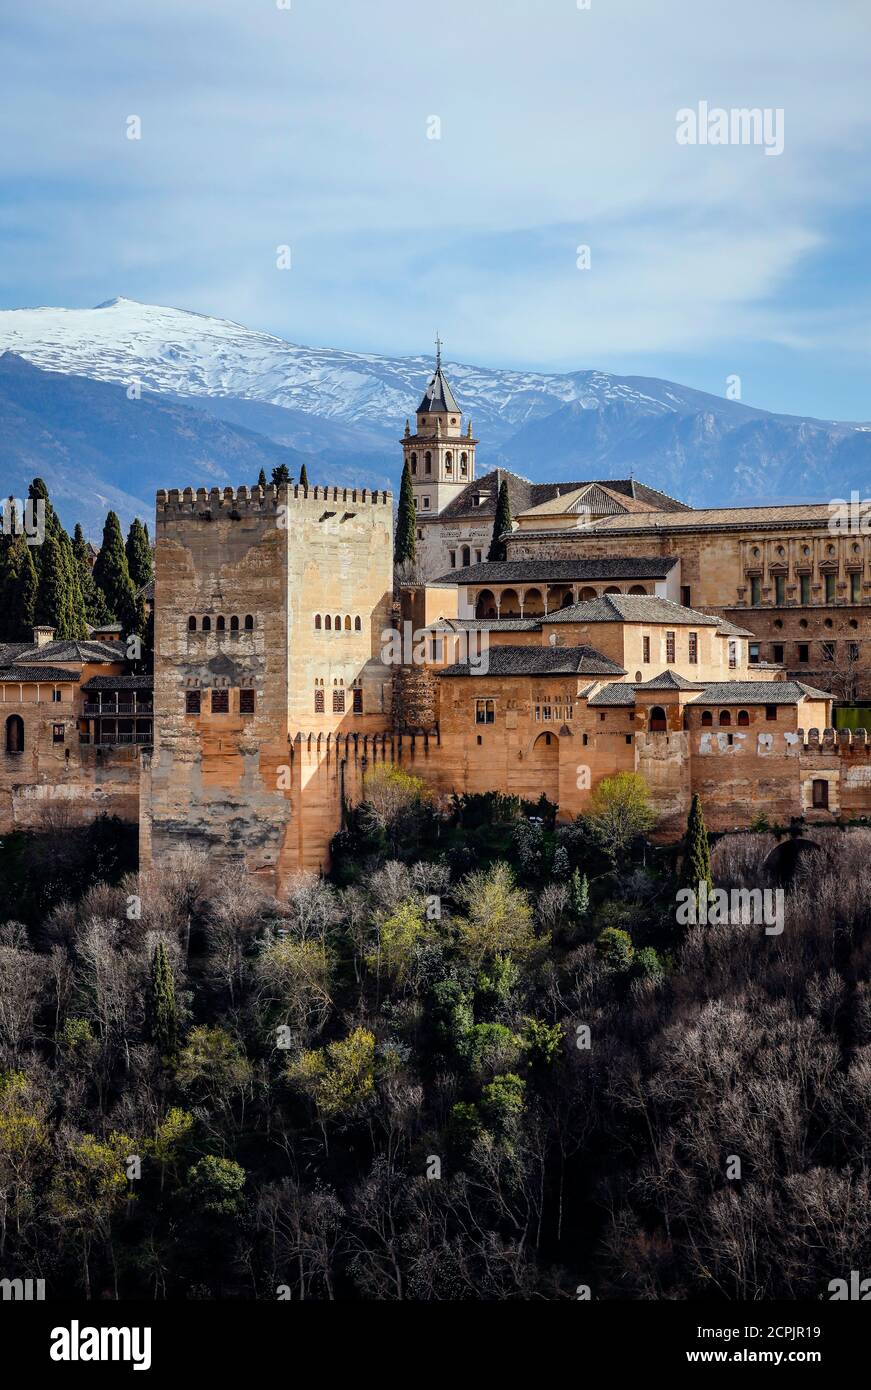 Alhambra Maurische Stadtburg, Nasriden Paläste, Palast Karl V., schneebedeckte Sierra Nevada im Hintergrund, Granada, Andalusien, Spanien Stockfoto